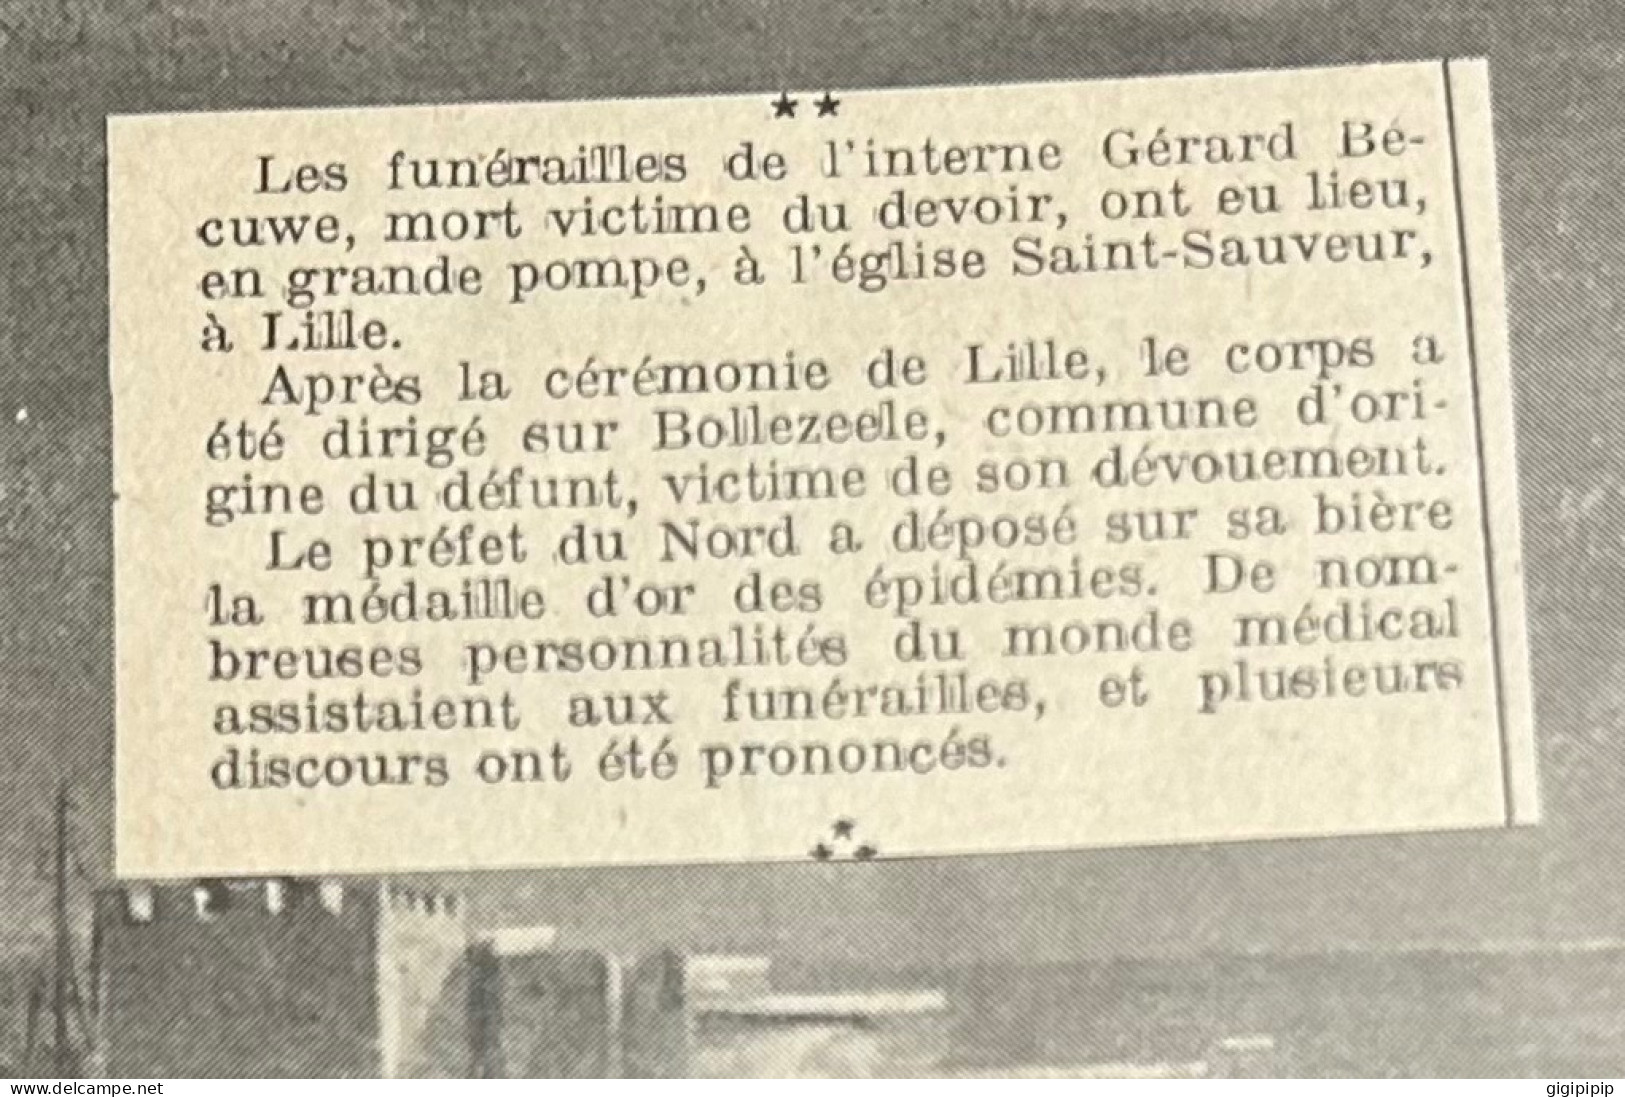 1930 GHI9 FUNERAILLES DE L'INTERNE Gerard BECUWE INTERNES DE L'HOPITAL SAINT-SAUVEUR Lille CHATELET - Collections